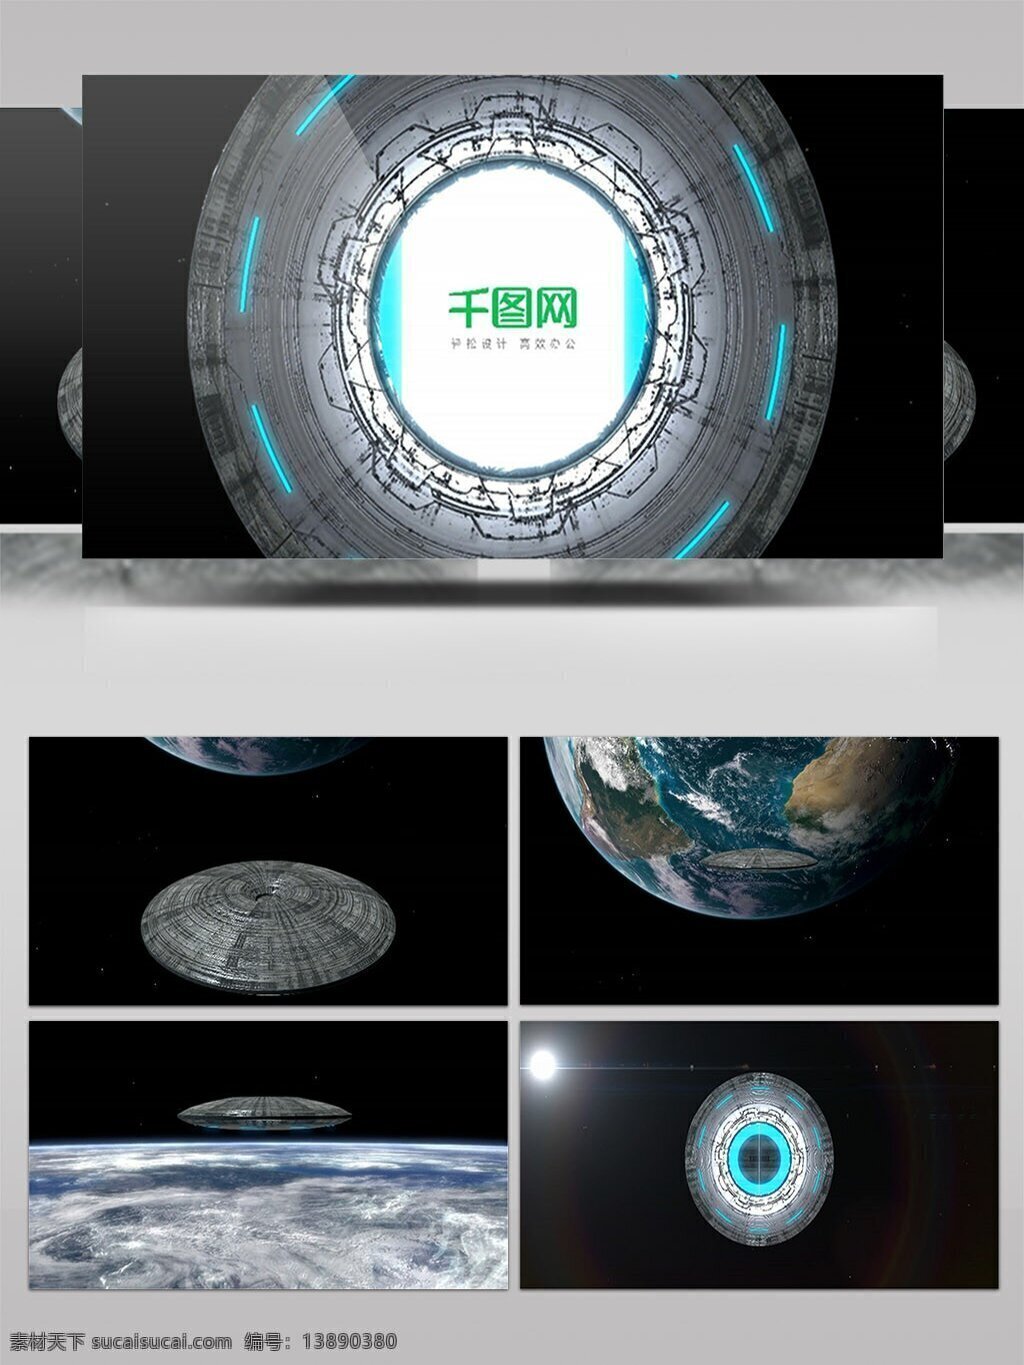 未来 科幻 空间 场景 logo 展示 ae 模板 宇宙 标志 星球 ufo 开场